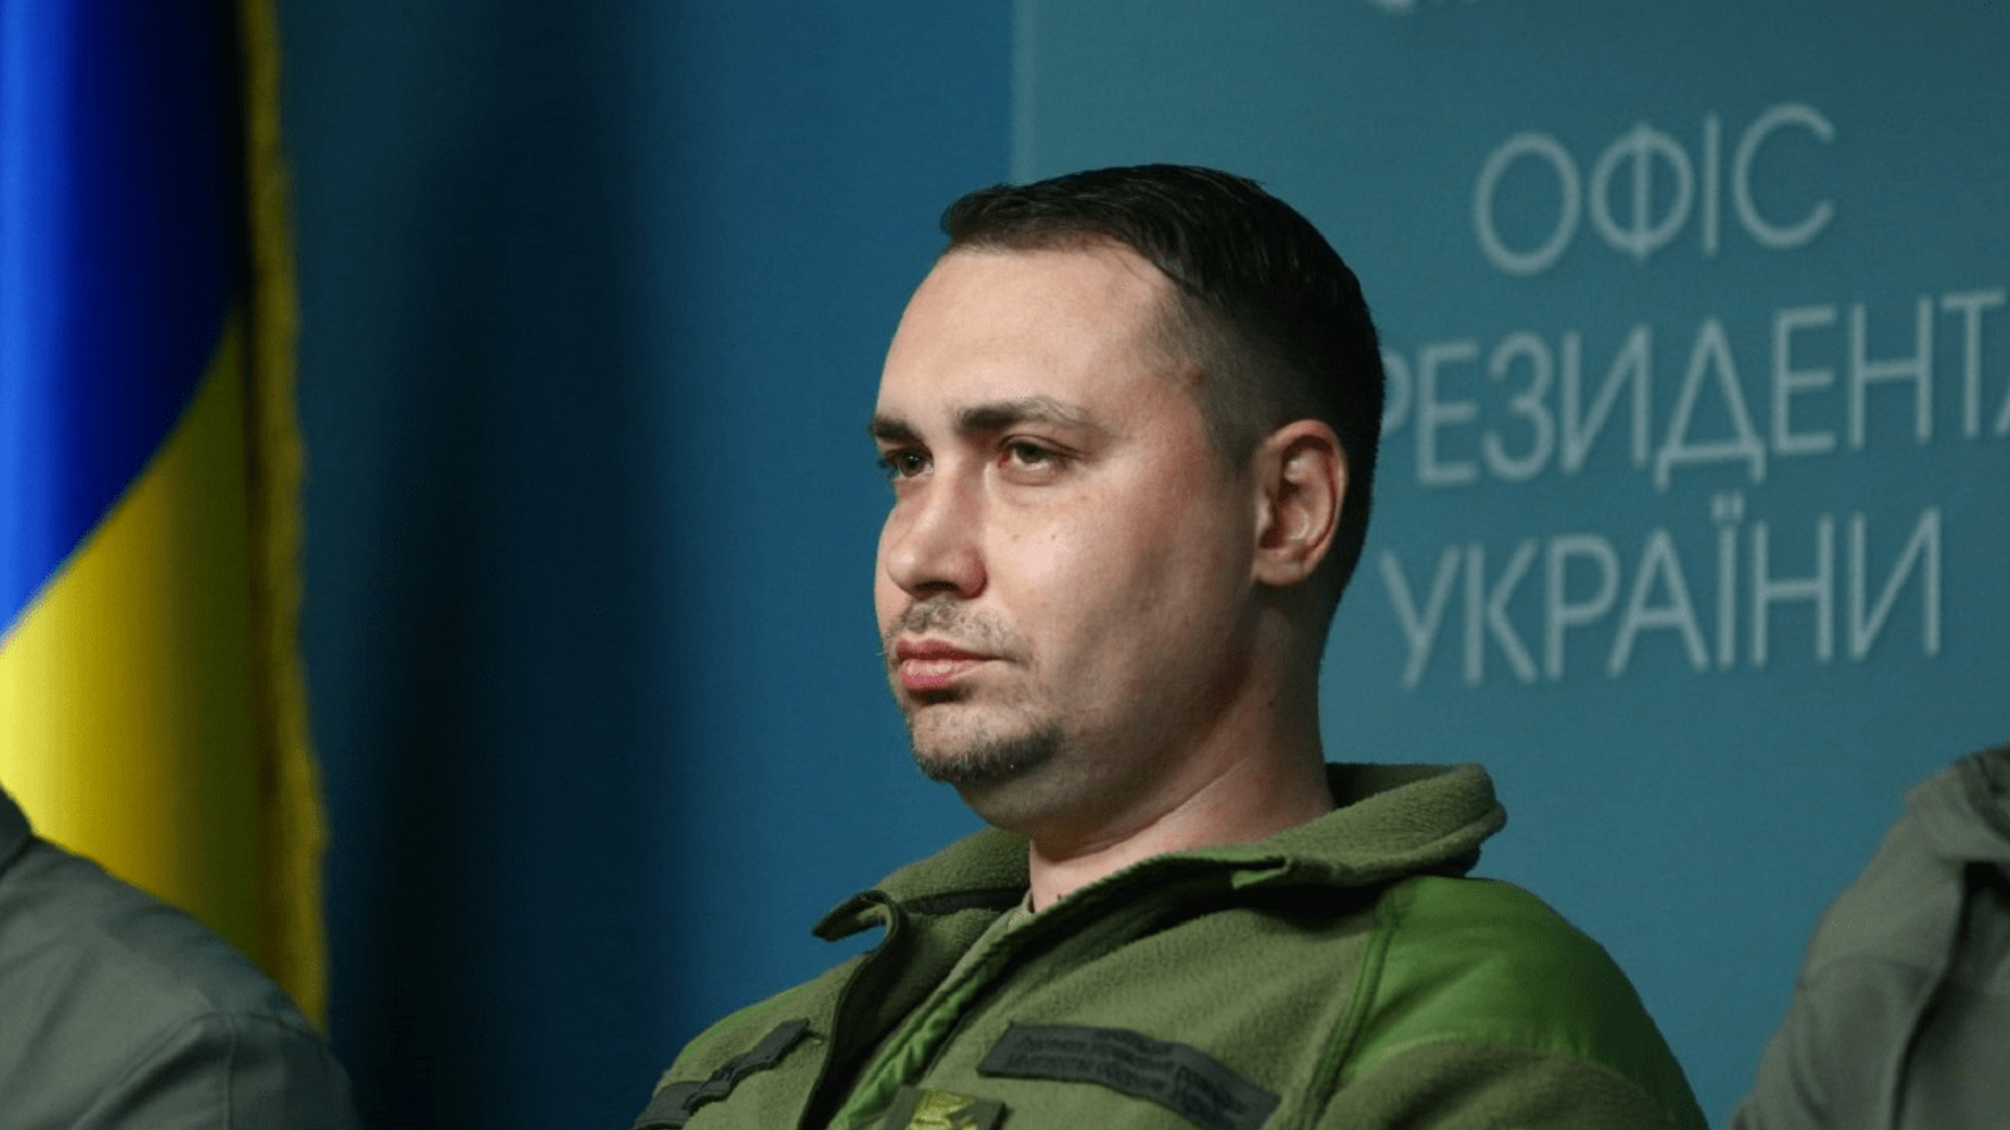 Керівник української розвідки хоче бути політологом: Буданов подав документи до Острозької академії